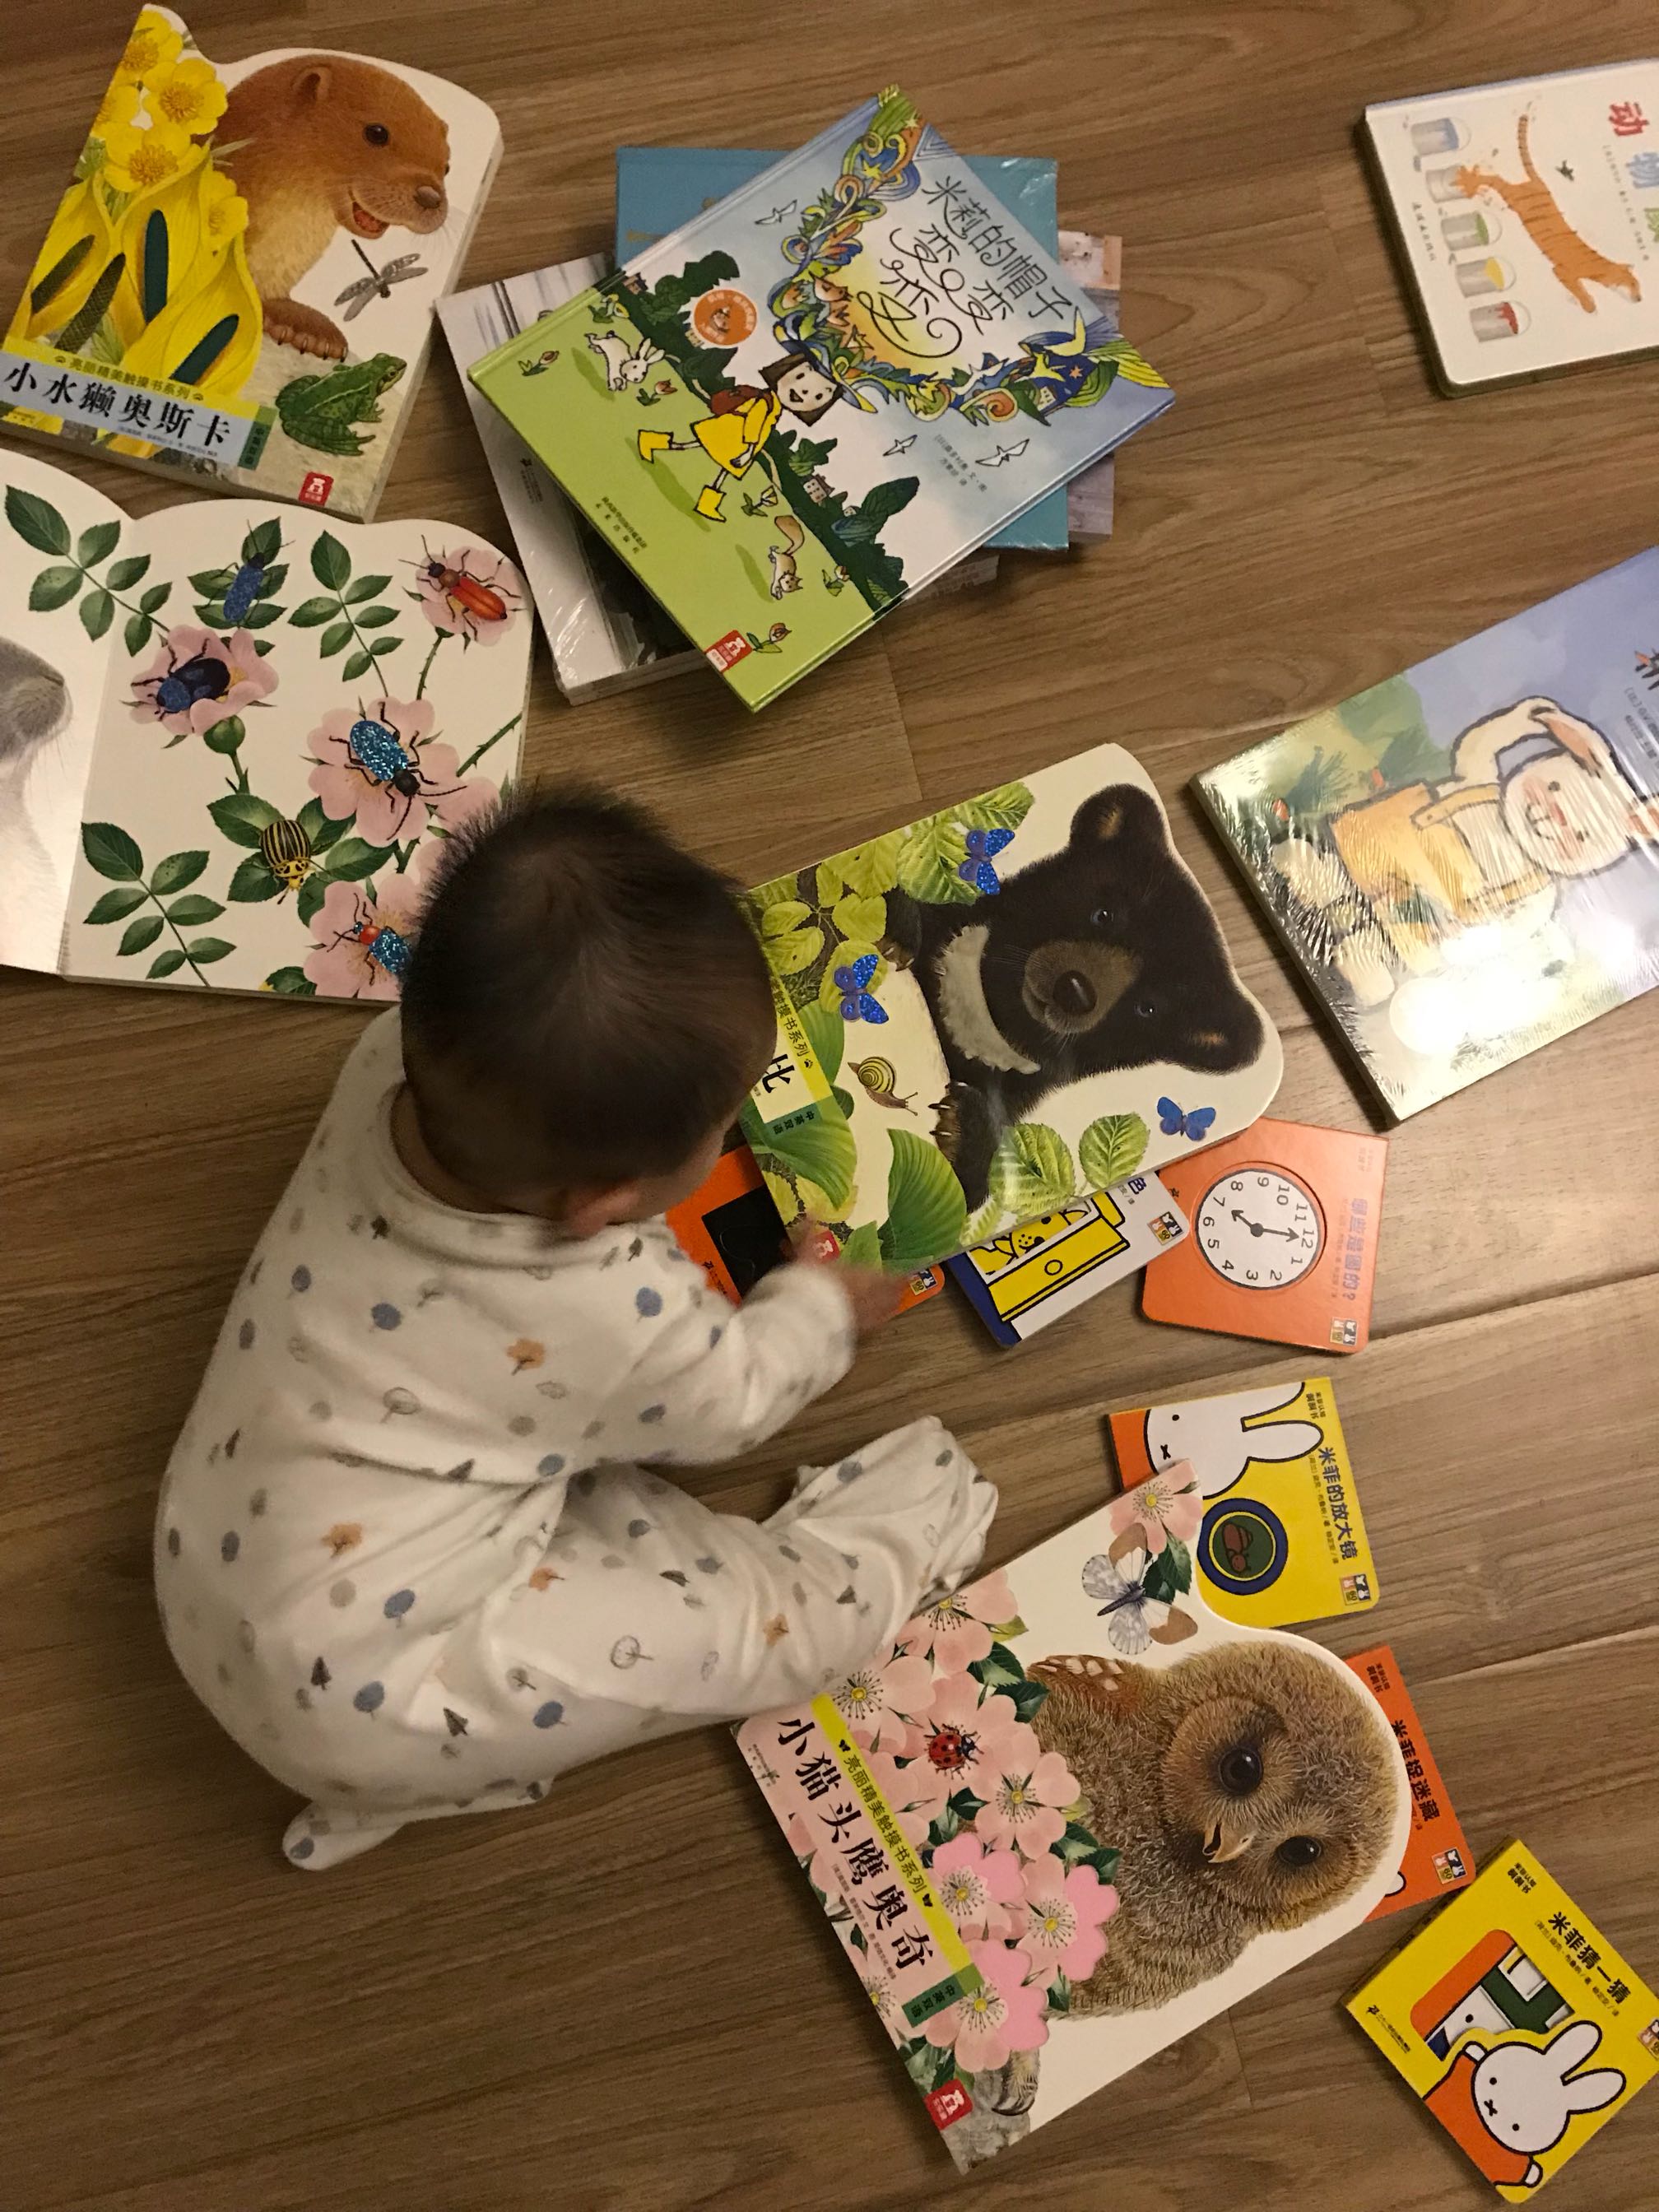 每次的购书活动，我几乎都参加，而现在买的最多的是婴儿书，想给宝宝一个美好的童年，培养一下阅读兴趣。